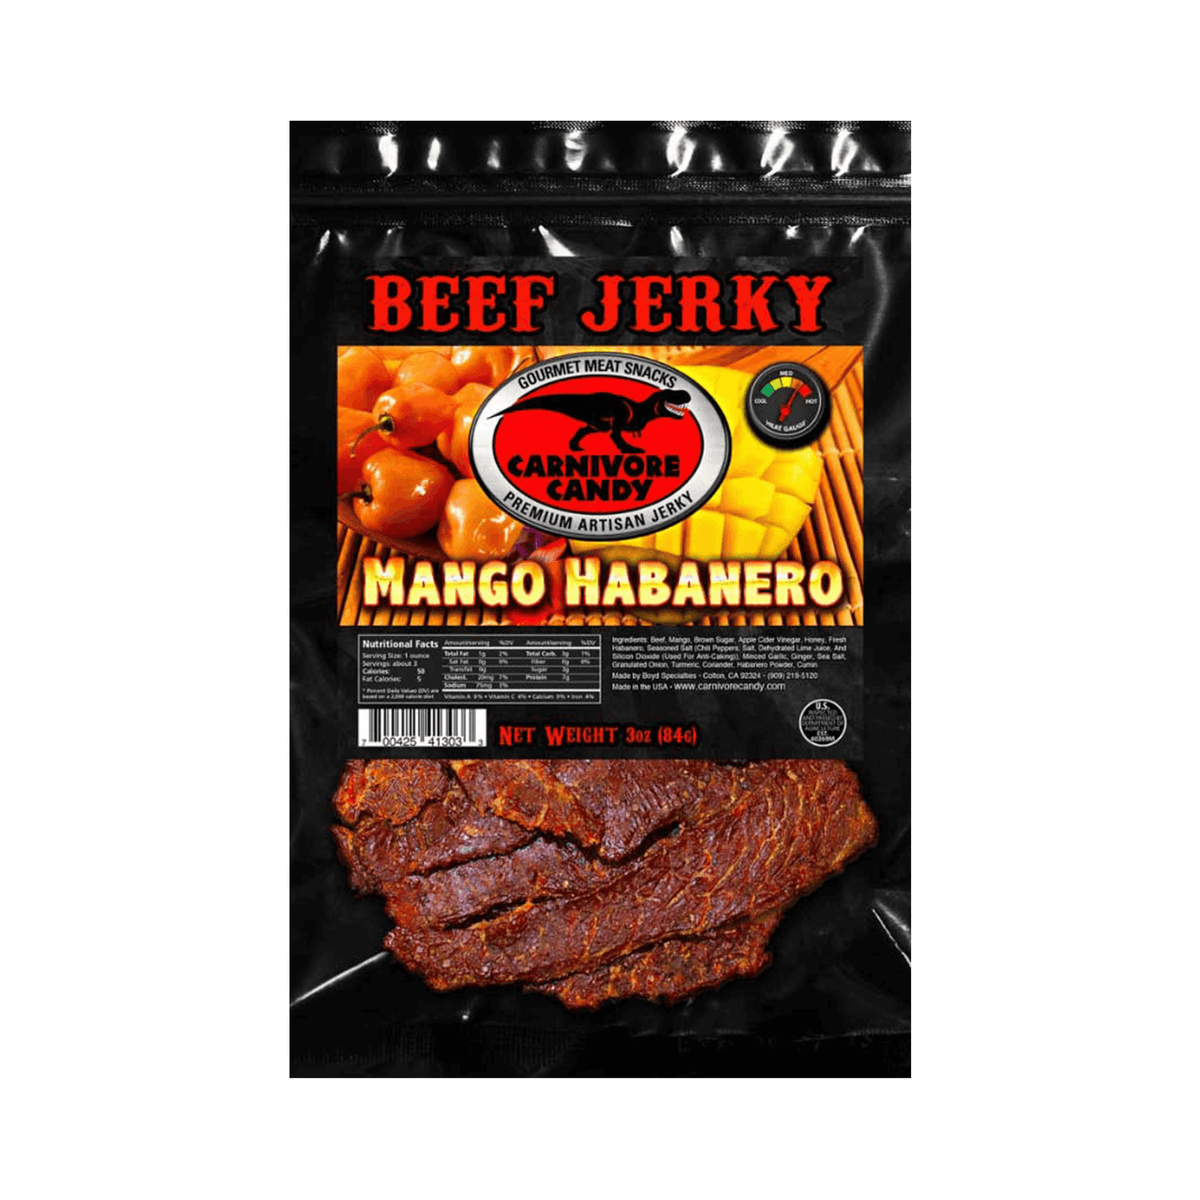 Mango Habanero Beef Jerky